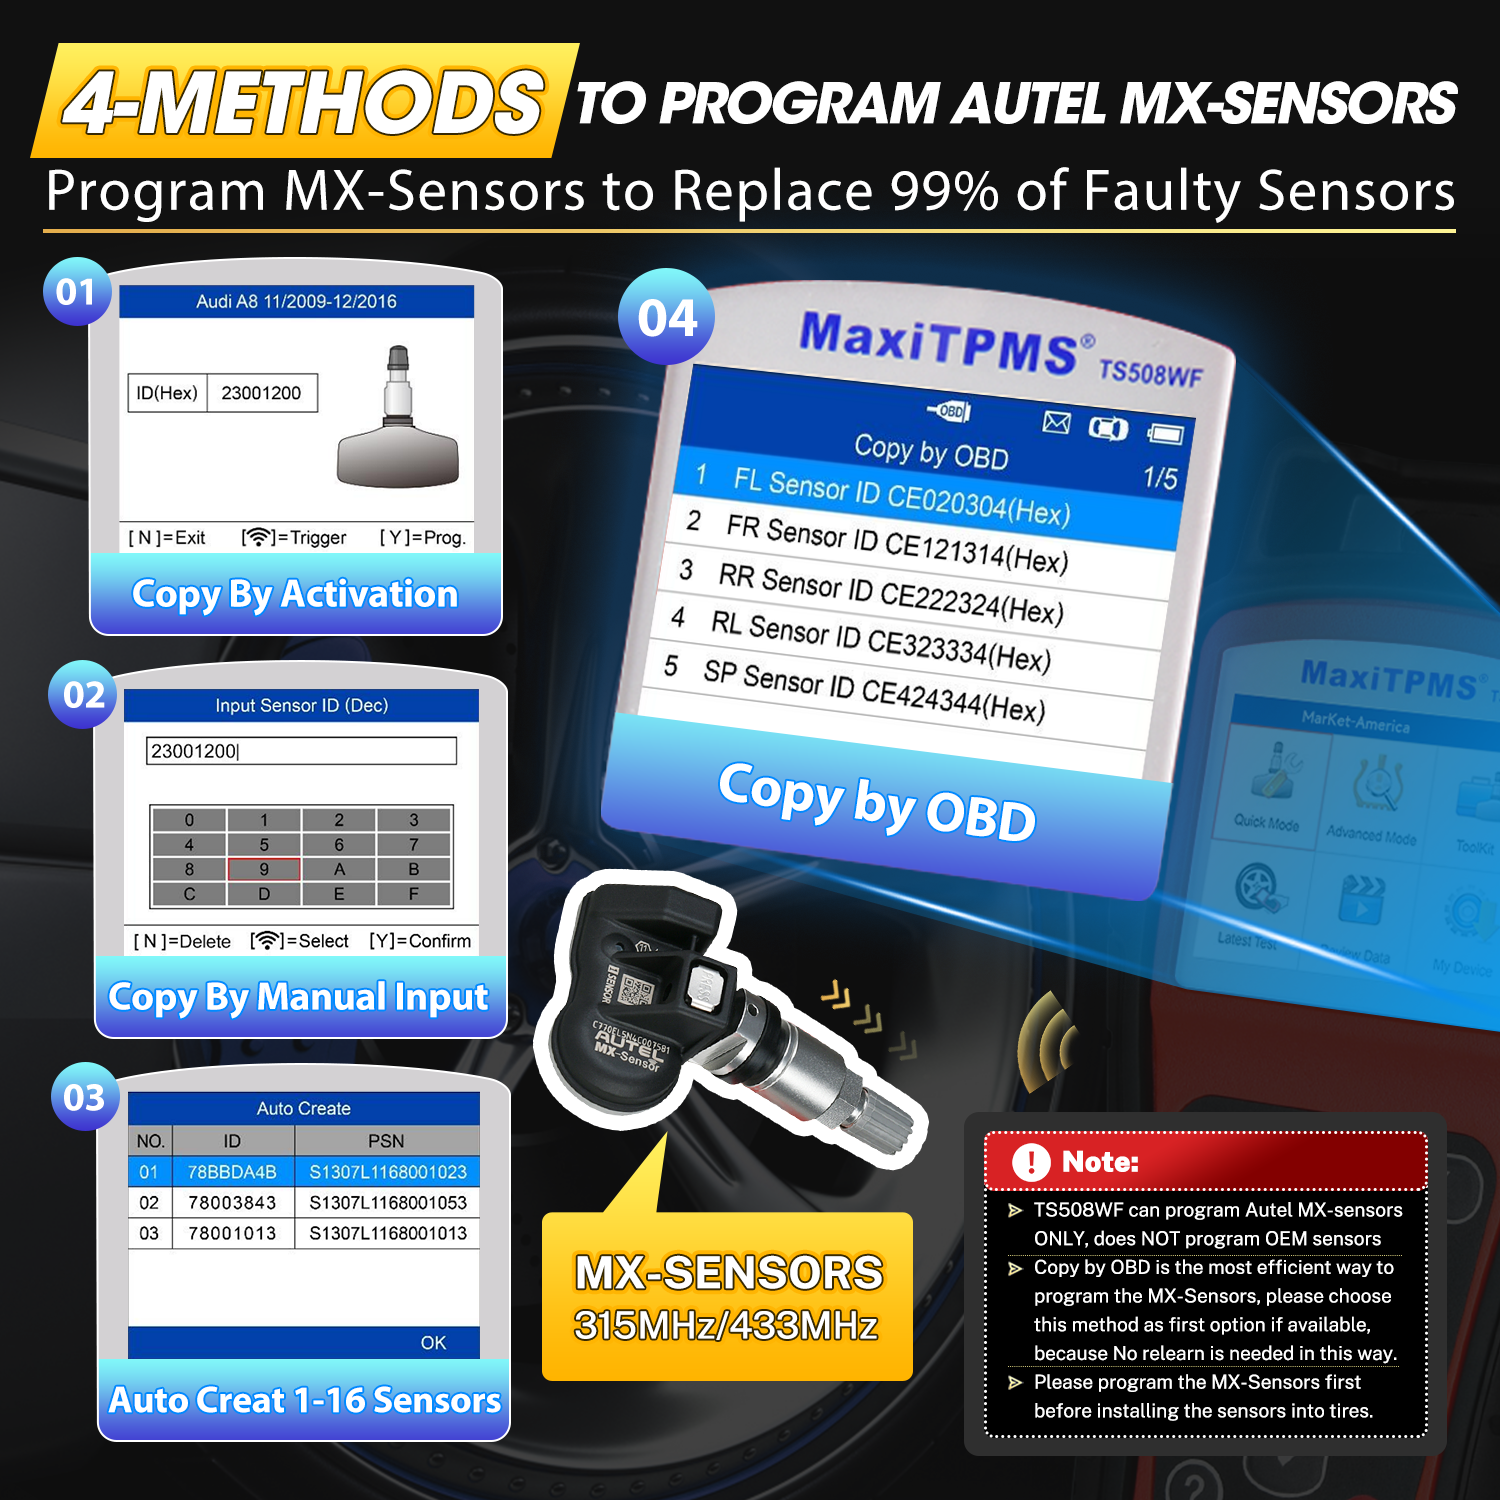 4 methods to program AUTEL mx-sensors